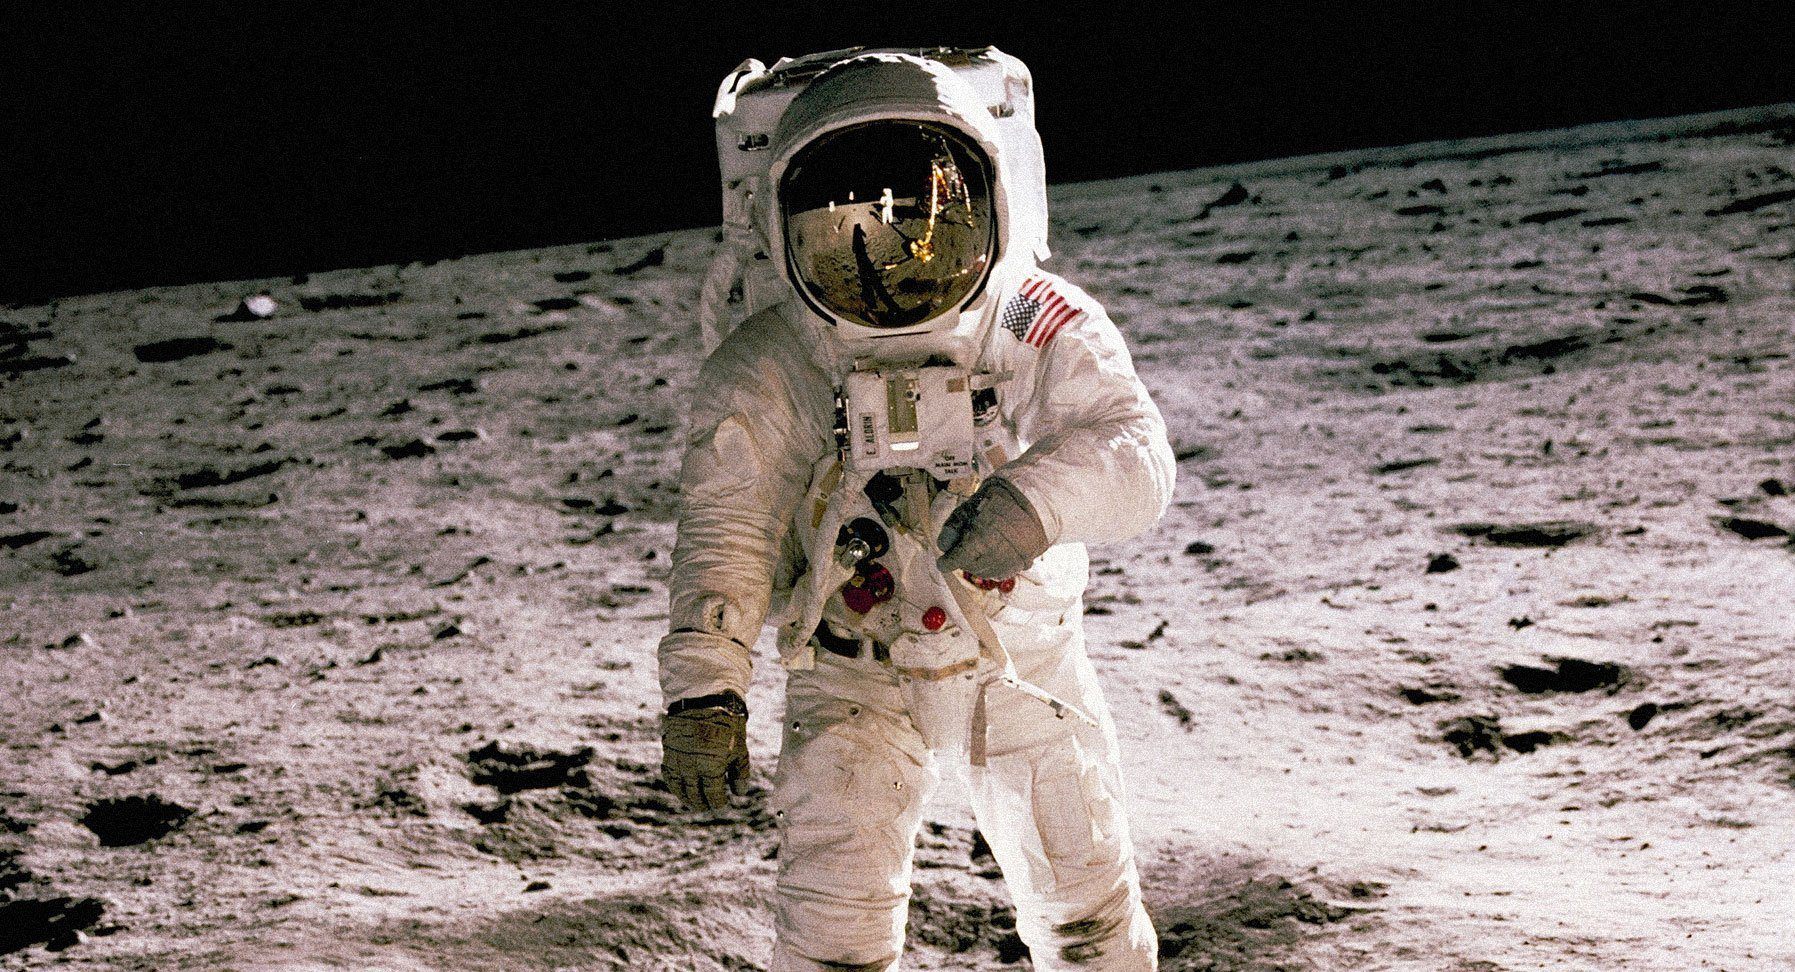 Apollo 11: A Monumental Mission